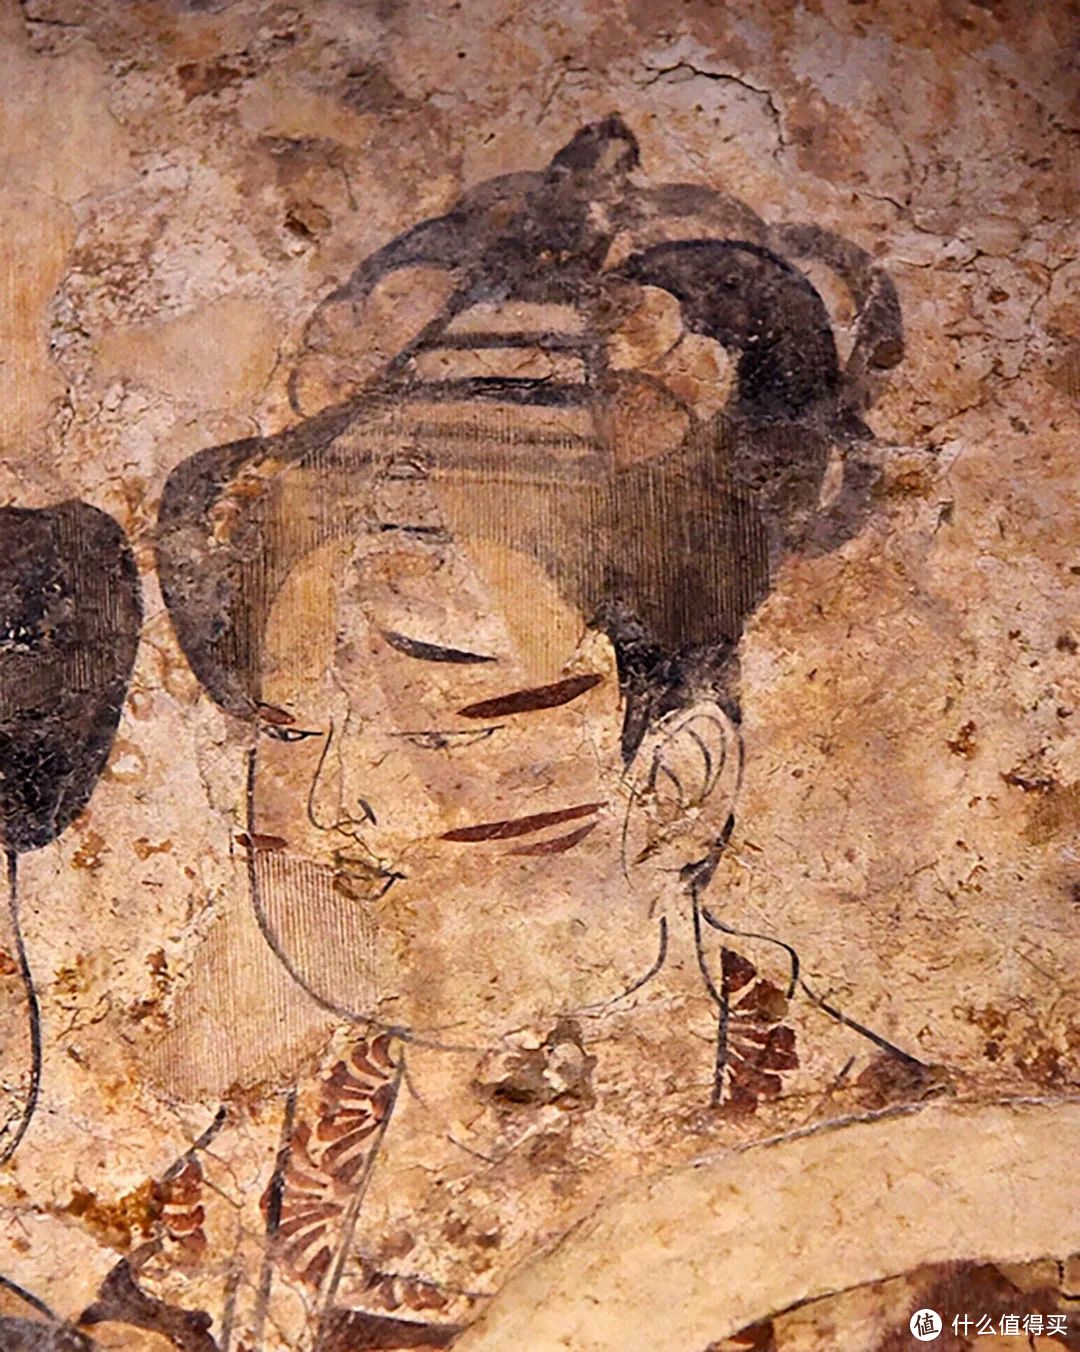 河南安阳中唐时期墓室壁画里画血晕妆的女性 ©“东方妆道”公众号